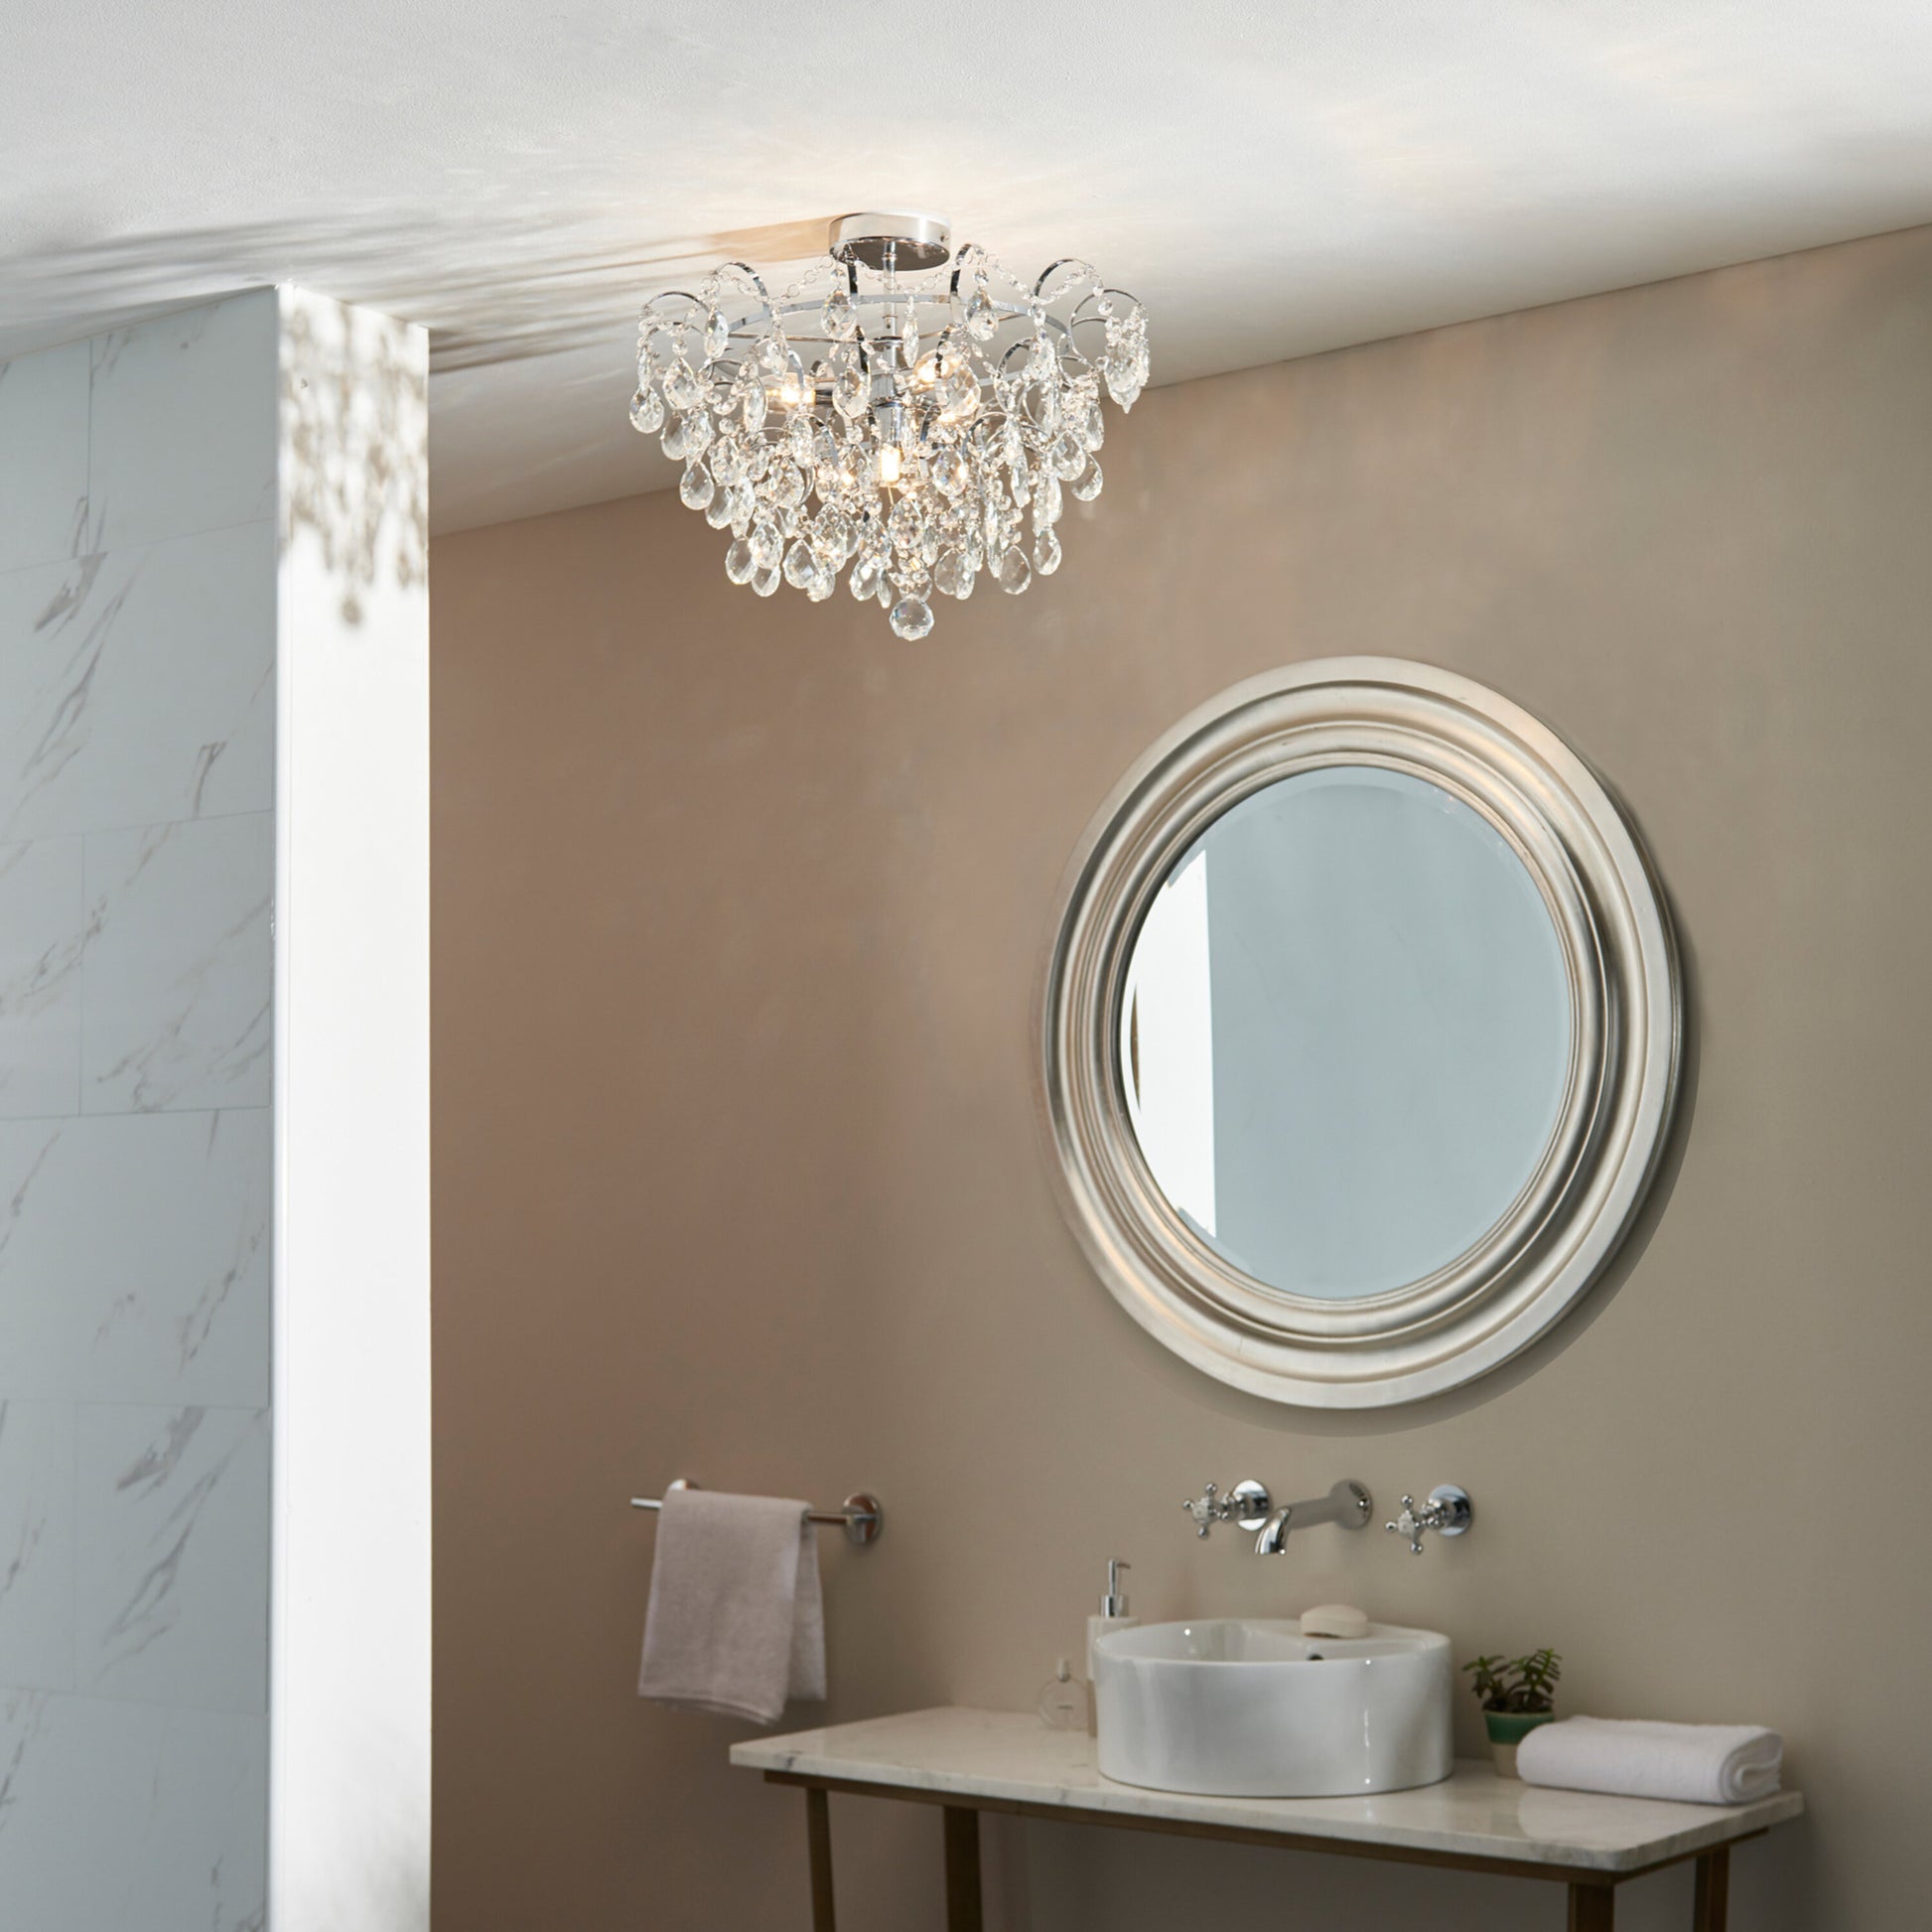 Alisona Bathroom 4 Ceiling Light